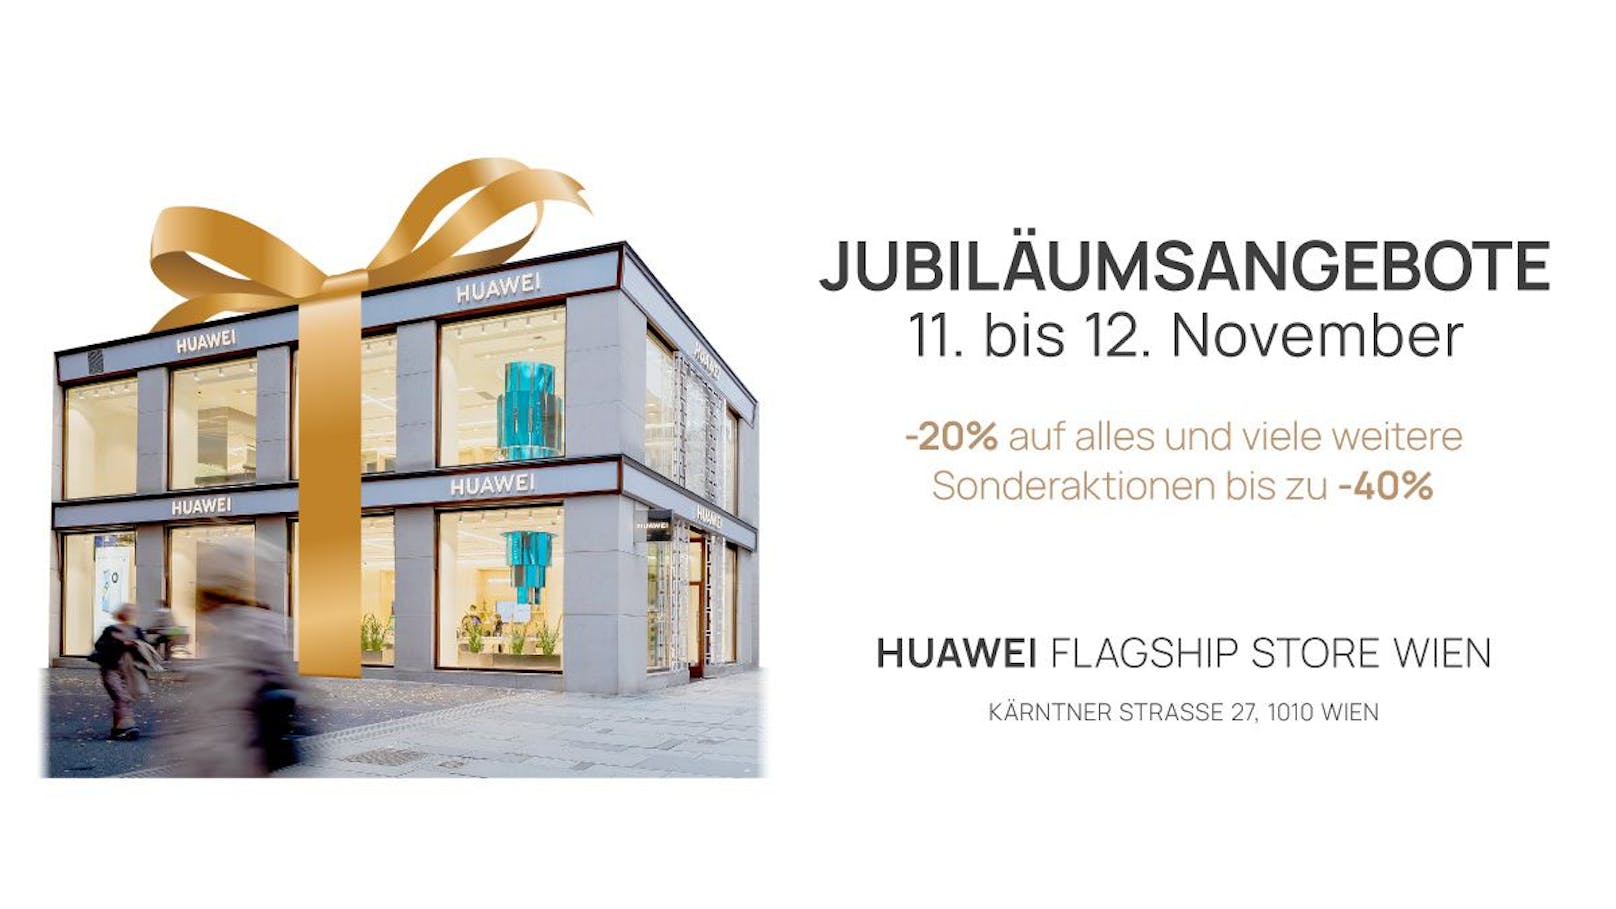 Der Huawei Flagship Store Wien Kärntner Straße wird ein Jahr alt und feiert das mit zahlreichen Aktionen.